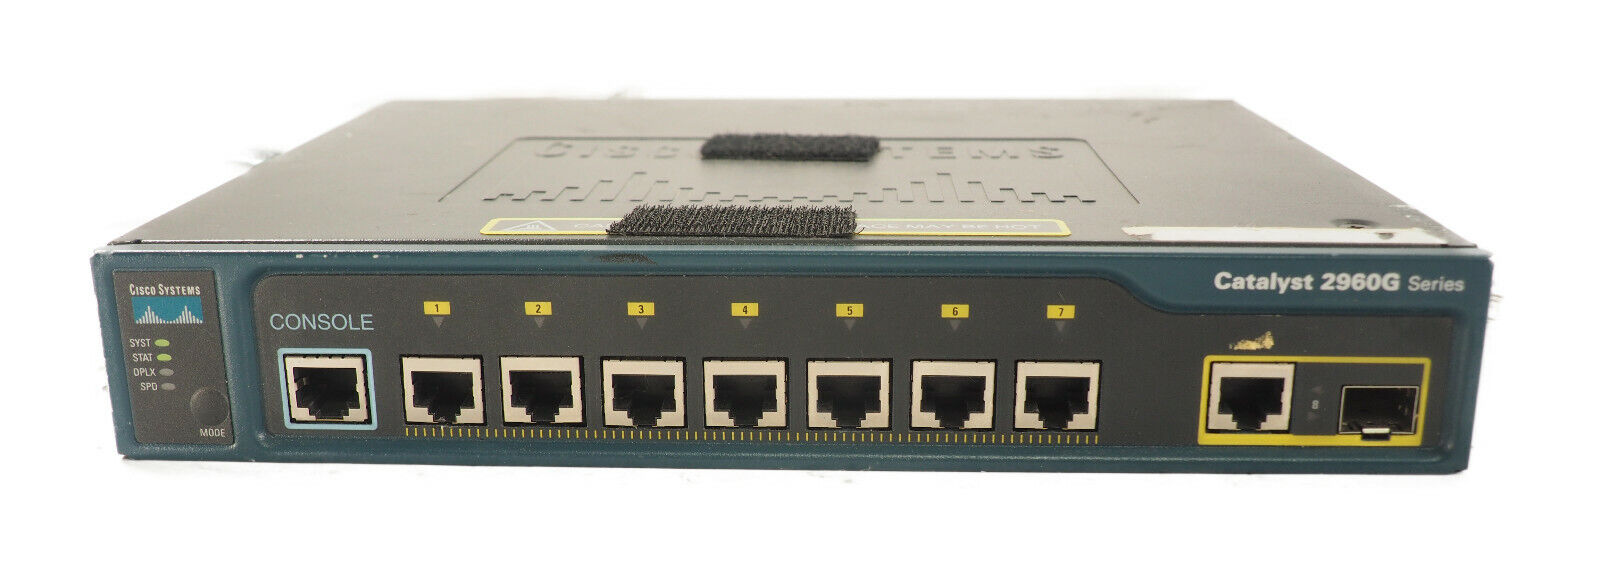 Cisco WS-C2960G-8TC-L 8 Port Gigabit Catalyst 2960G Switch